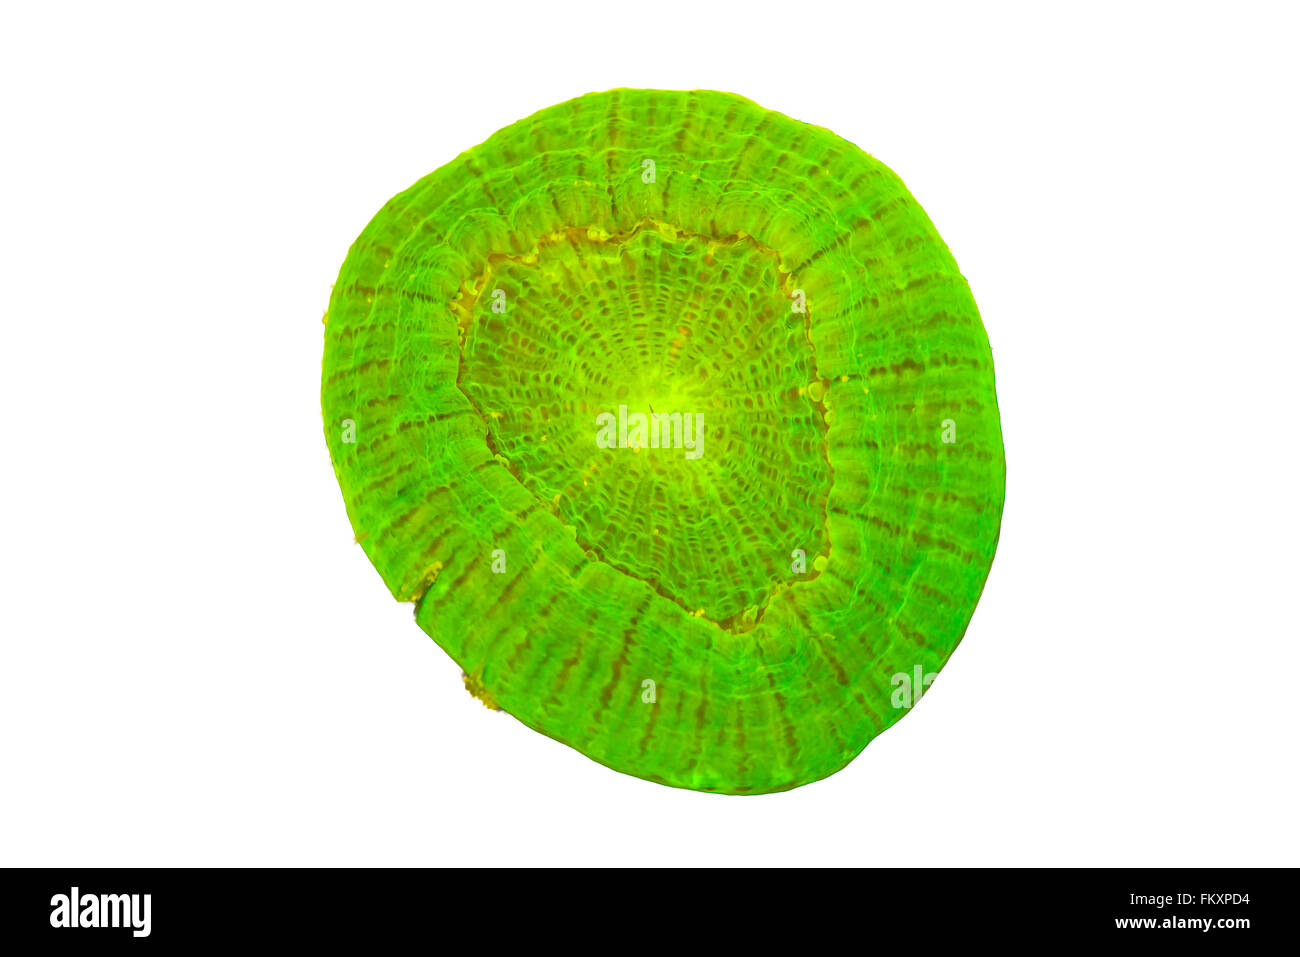 Un solitaire stony coral {} Scolymia sp. isolé sur fond blanc. L'objet est vert vif fluorescentes sous lumière ultraviolette Banque D'Images